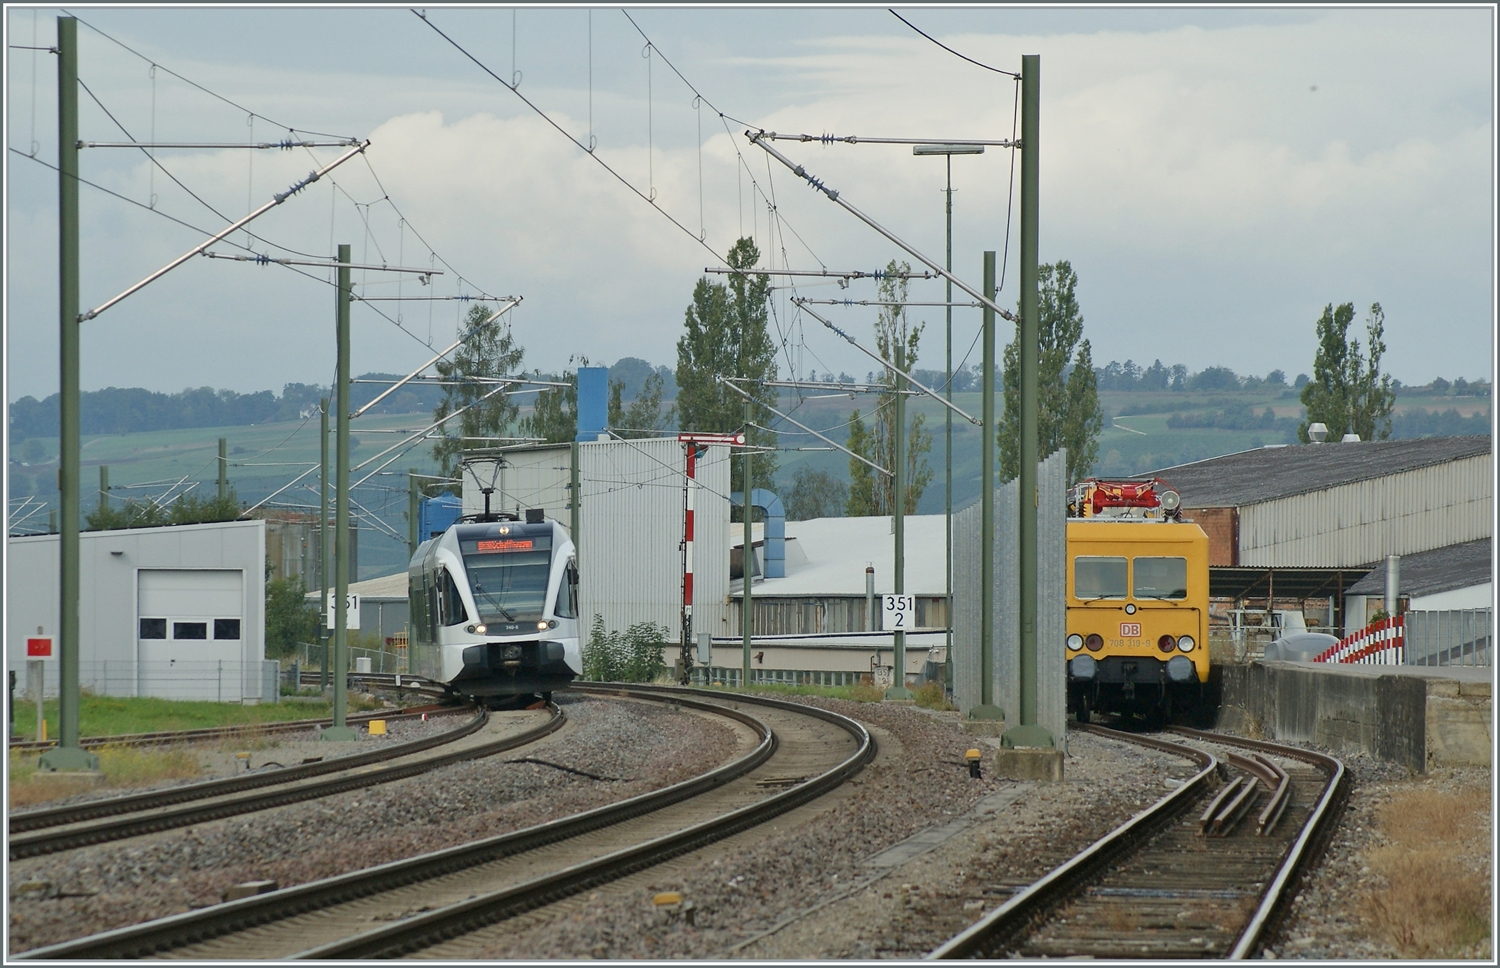 Der Thurbo GTW RABe 526 040-5 erreicht Neuenkirch, während links im Bild etwas versteckt ein DB Fahrleitungsmontage Fahrzeug auf den nächsten Einsatz wartet. 

6. Sept. 2022